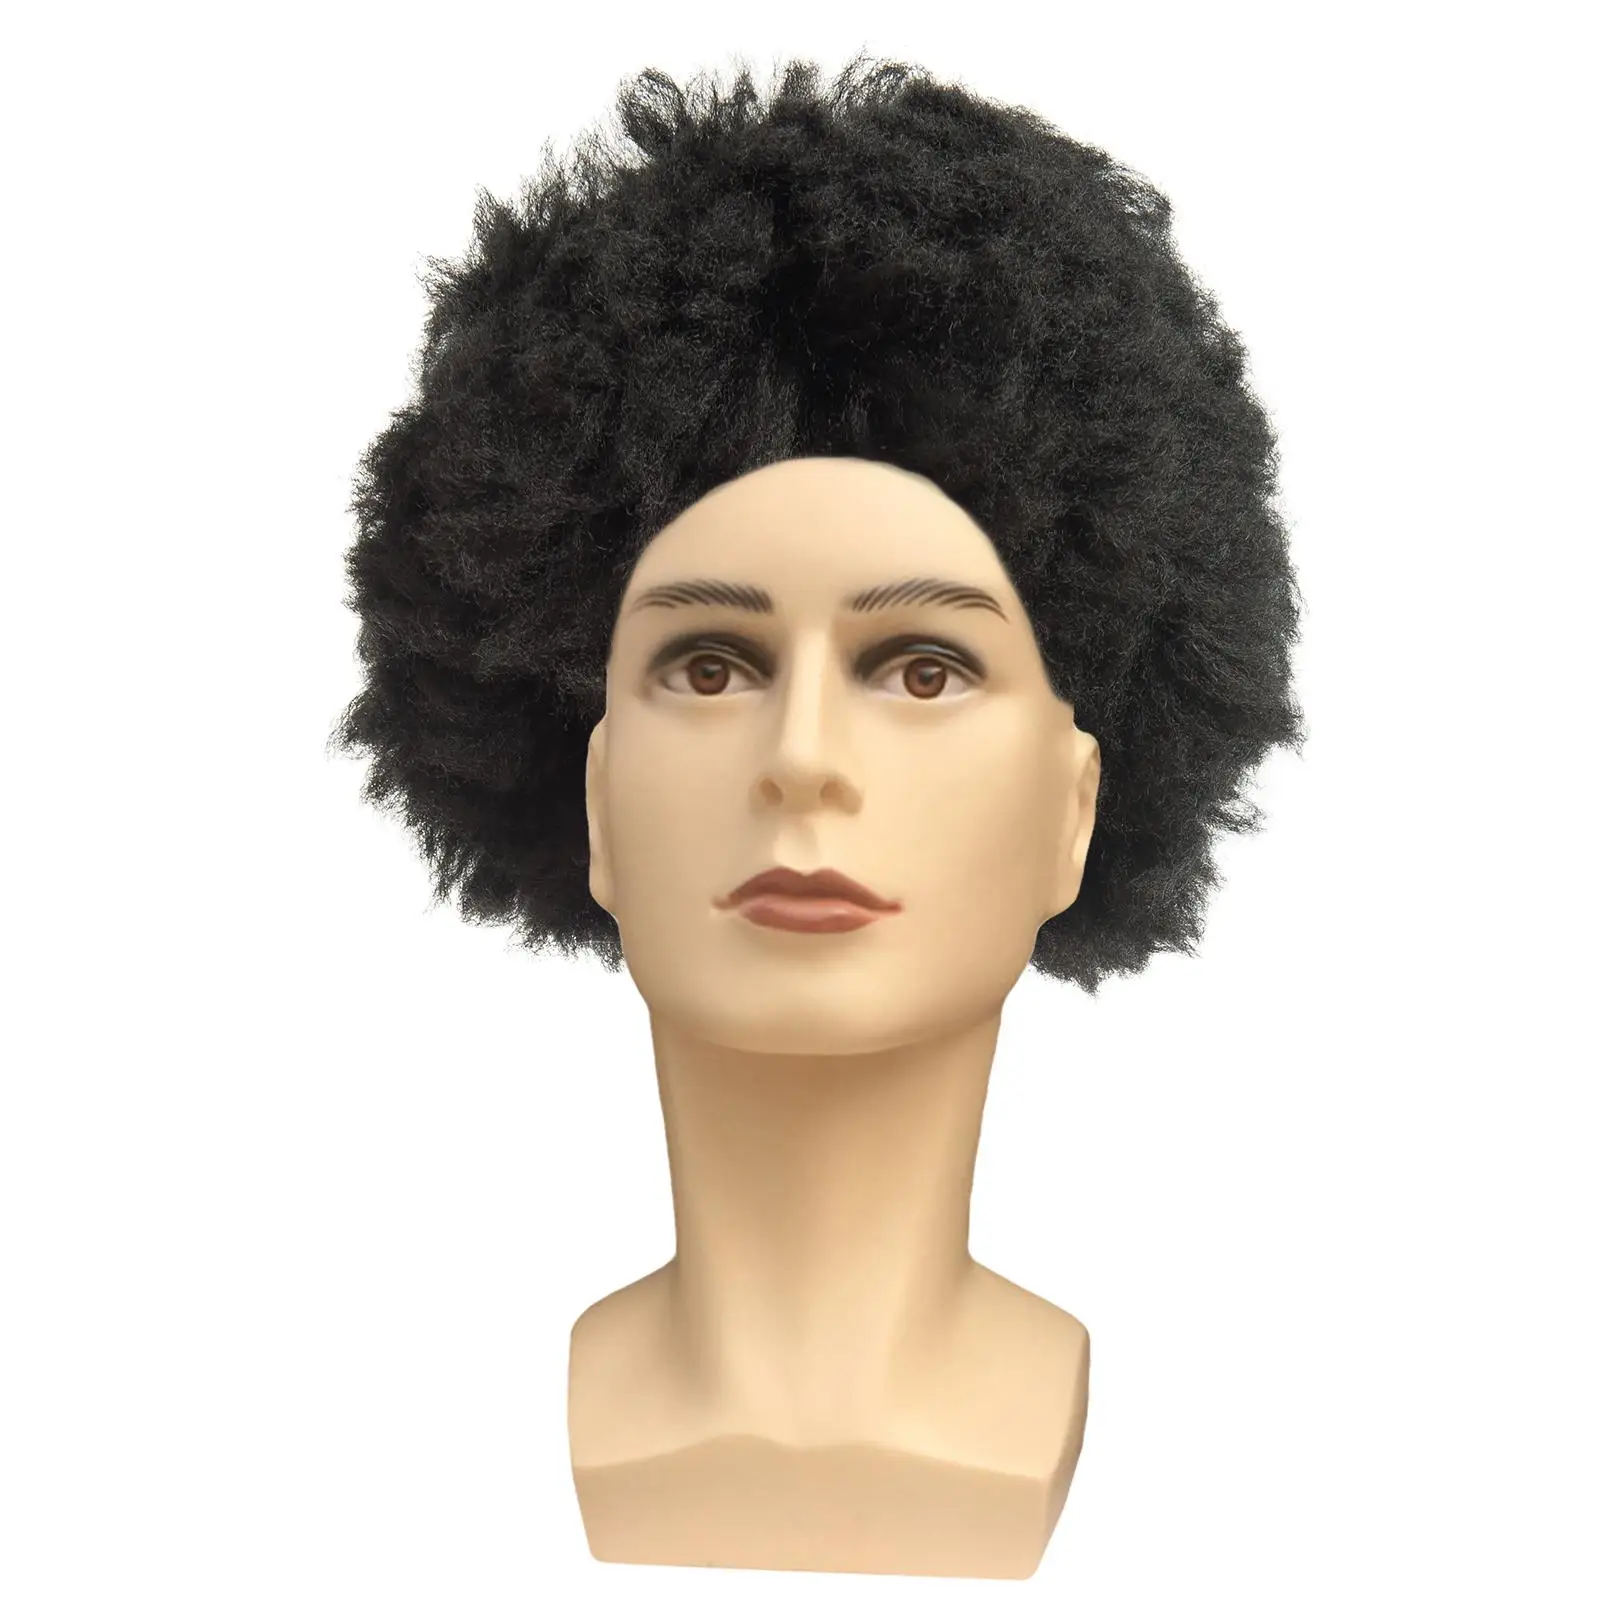 Male Mannequin Head Model Circumference 54cm Professional Elegant Premium